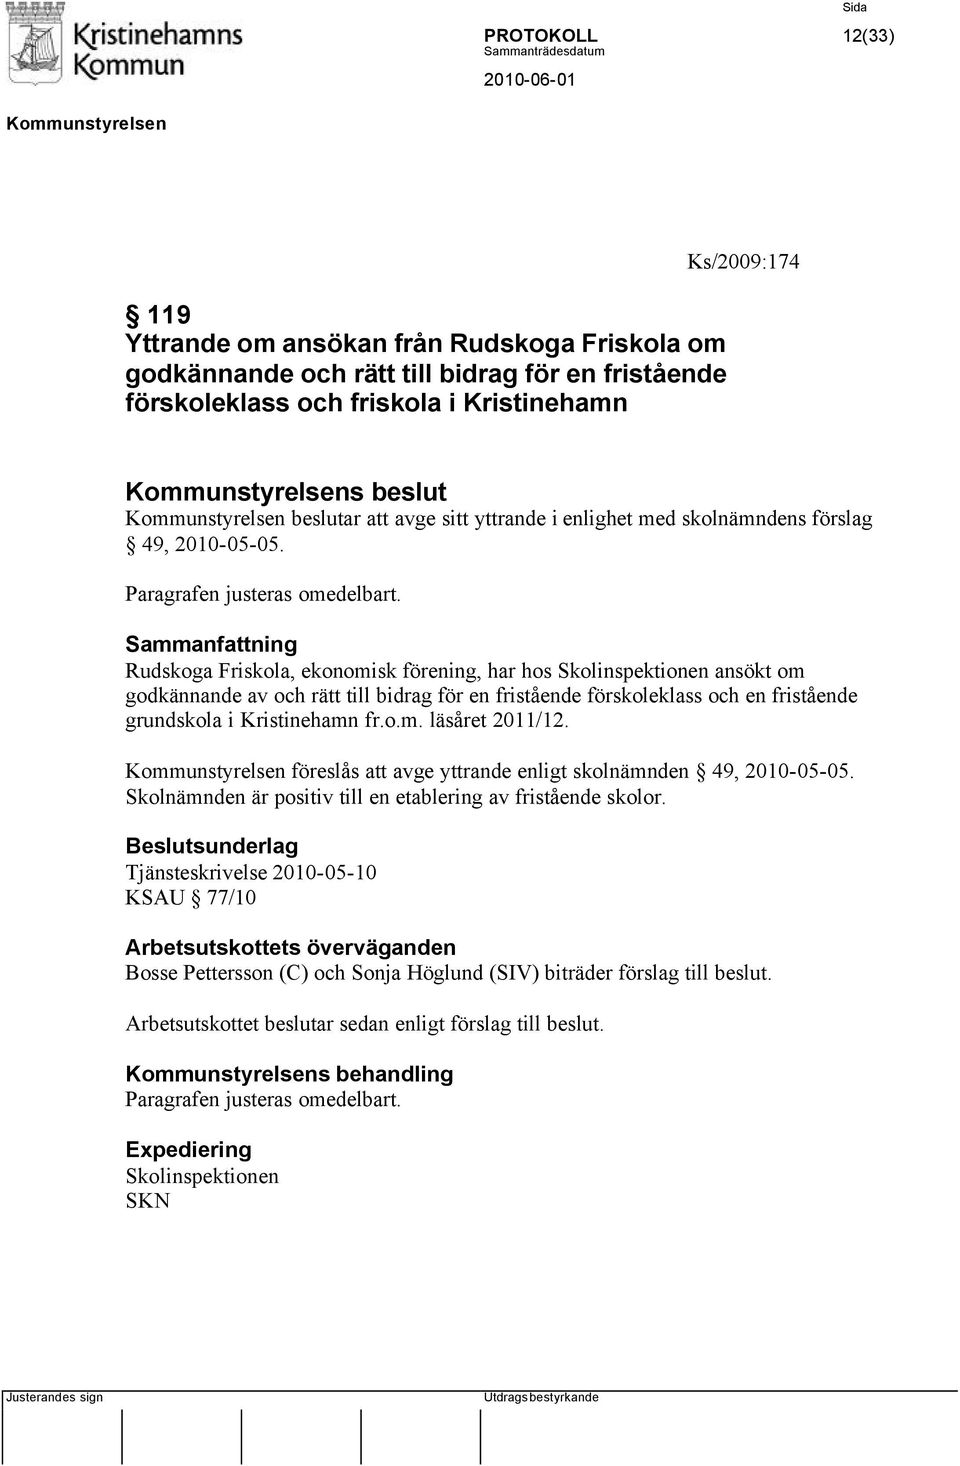 Rudskoga Friskola, ekonomisk förening, har hos Skolinspektionen ansökt om godkännande av och rätt till bidrag för en fristående förskoleklass och en fristående grundskola i Kristinehamn fr.o.m. läsåret 2011/12.